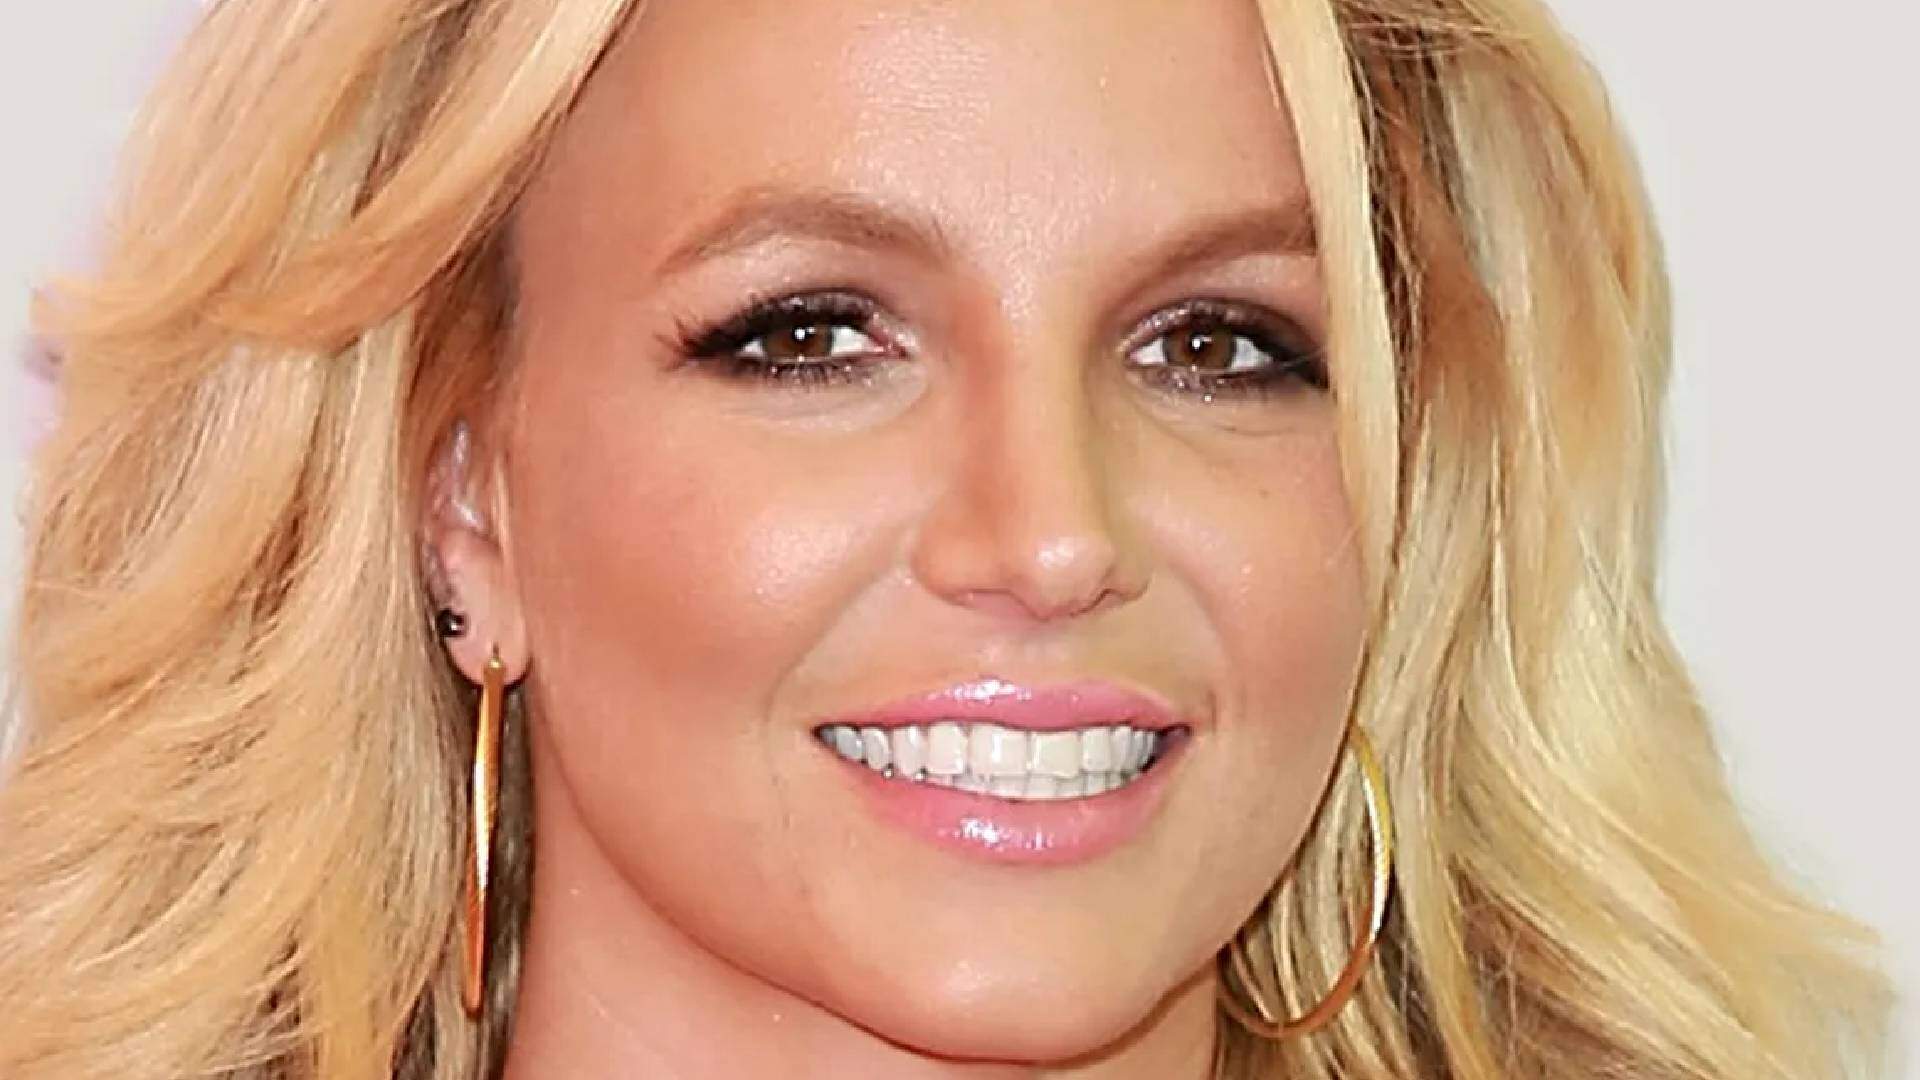 Britney Spears: famoso cantor internacional dá spoiler sobre futura parceria musical com cantora - Metropolitana FM